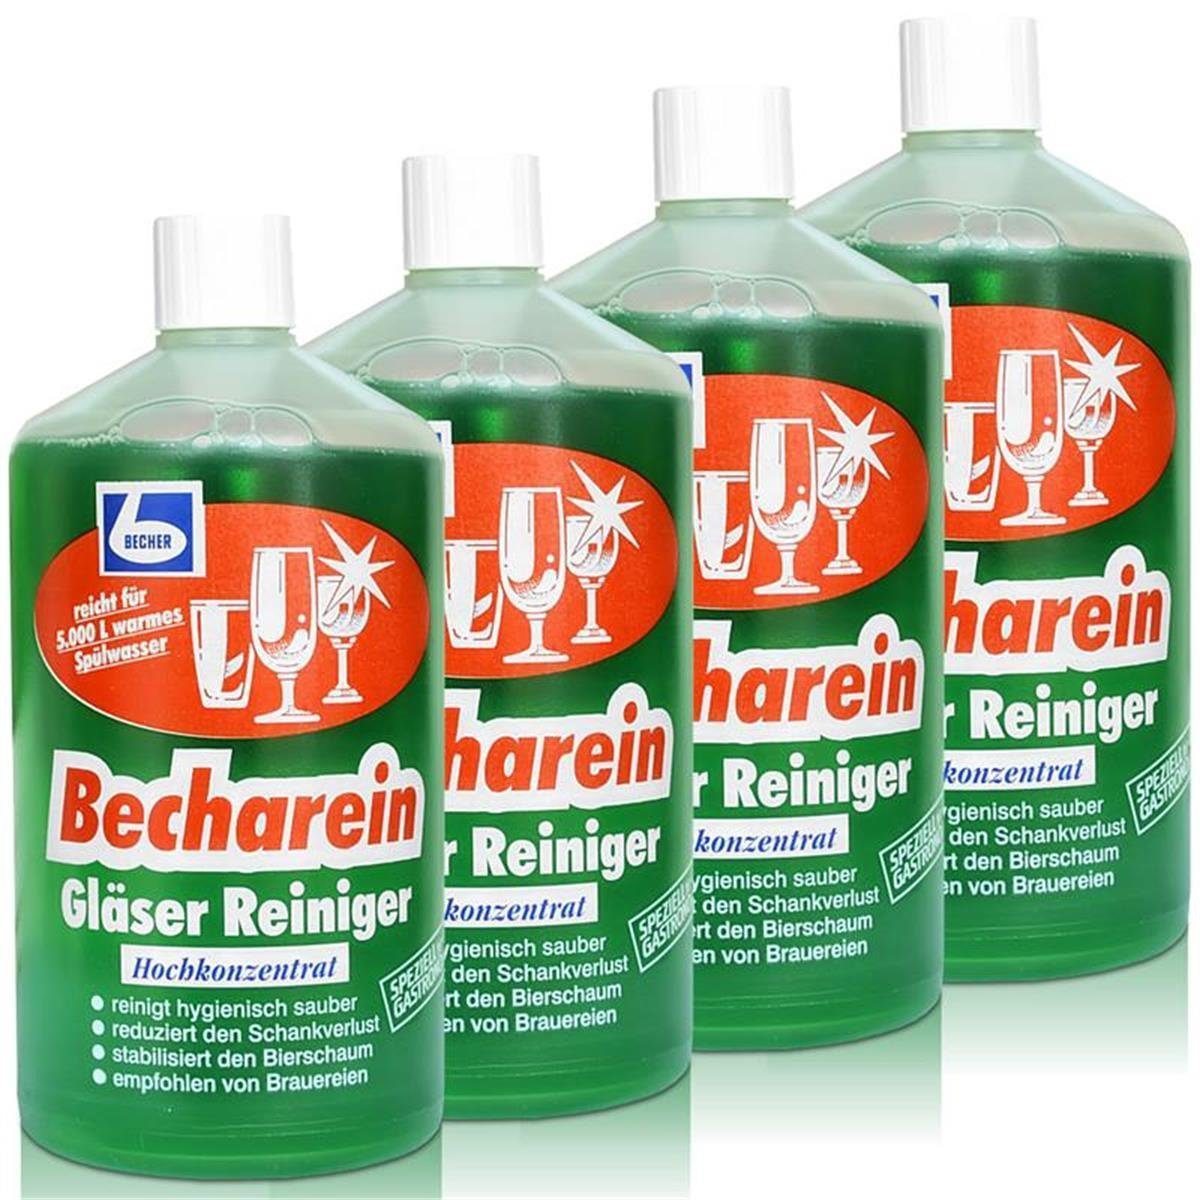 Dr. Becher 4x Dr. Becher Becharein Gläser Reiniger Hochkonzentrat / 1 Liter Glasreiniger